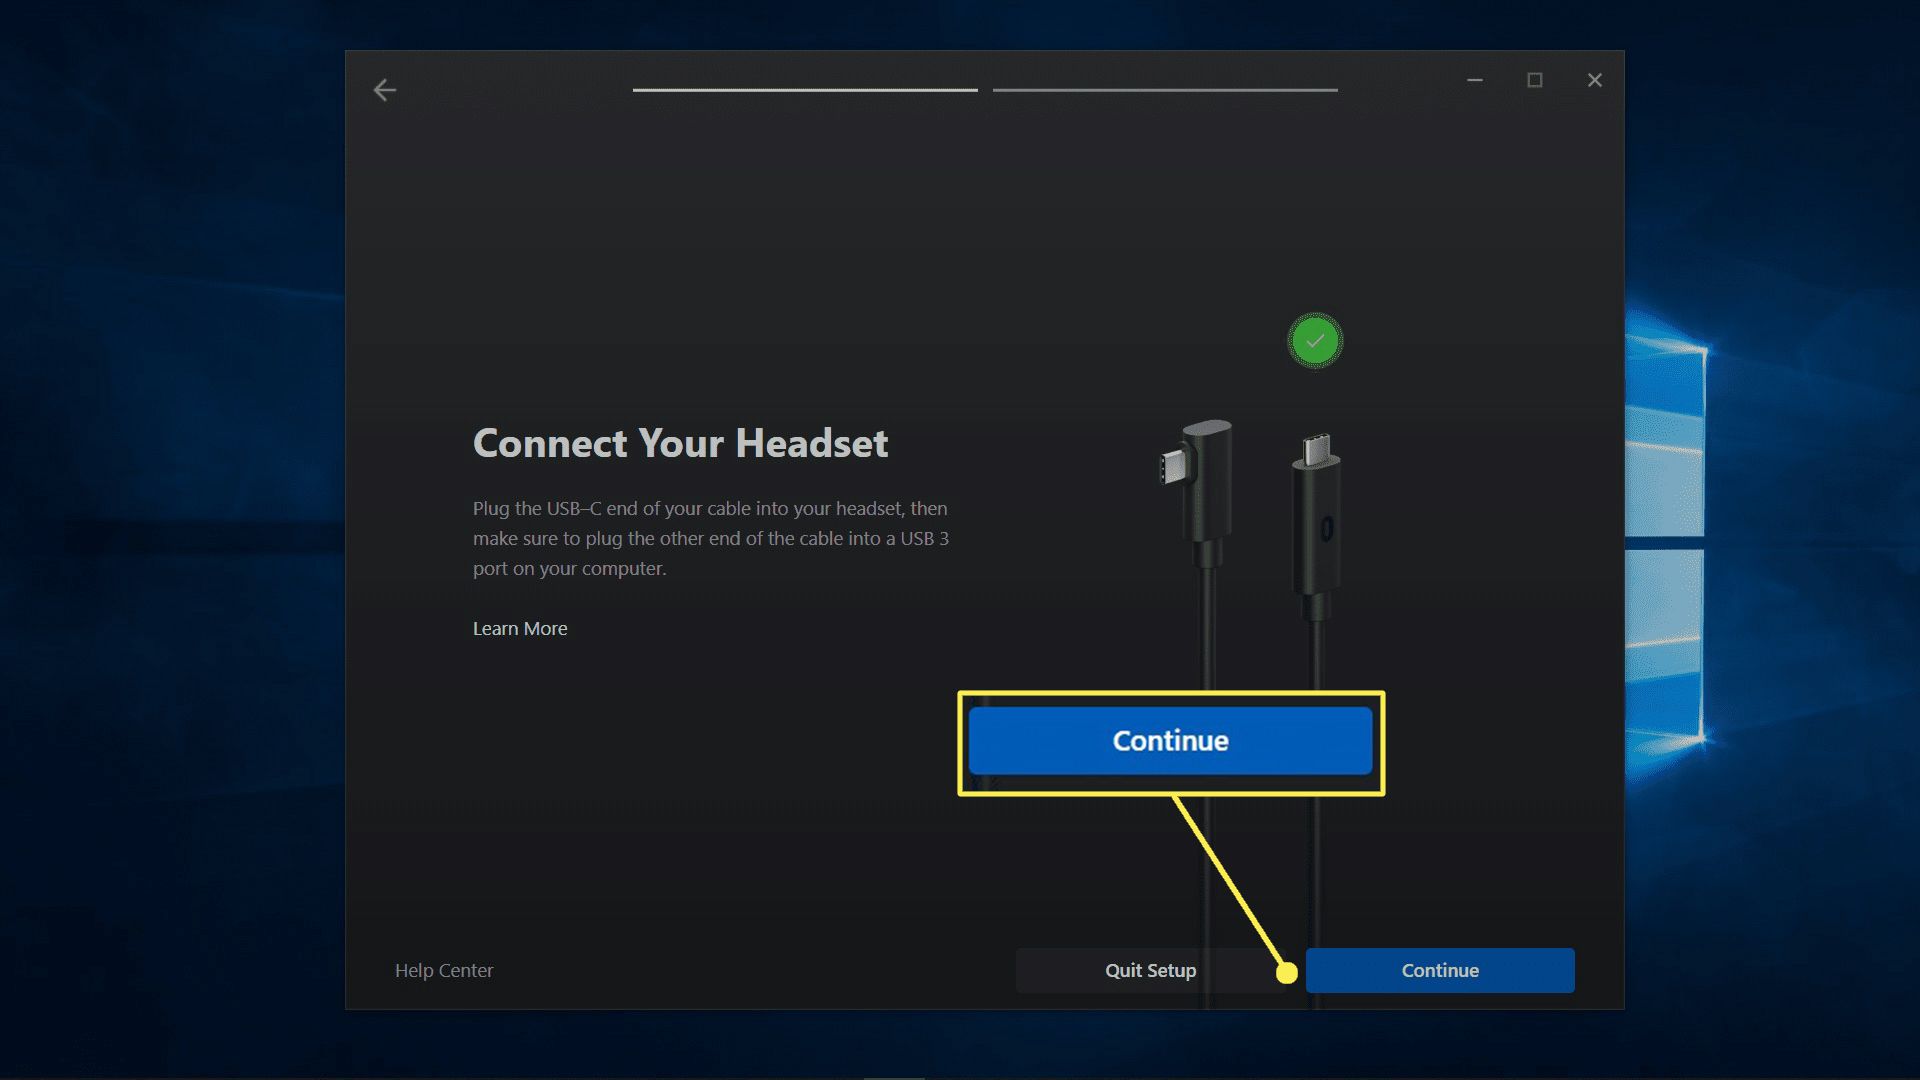 Fortsätt markerat på headsetanslutningsskärmen i oculus-appen.